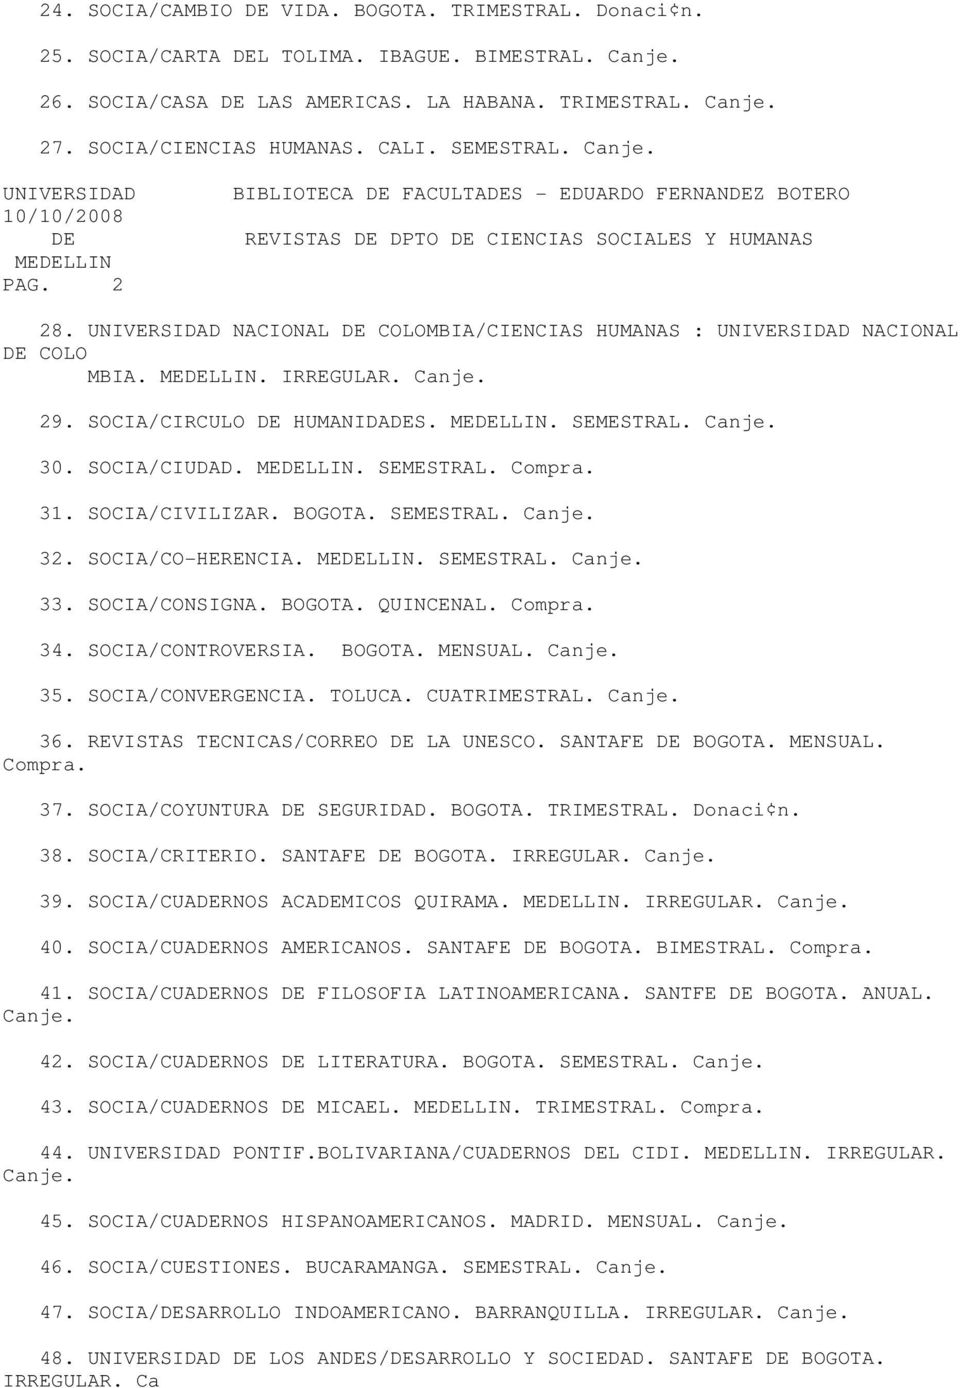 UNIVERSIDAD NACIONAL DE COLOMBIA/CIENCIAS HUMANAS : UNIVERSIDAD NACIONAL DE COLO MBIA.. IRREGULAR. 29. SOCIA/CIRCULO DE HUMANIDADES.. SEMESTRAL. 30. SOCIA/CIUDAD.. SEMESTRAL. Compra. 31.